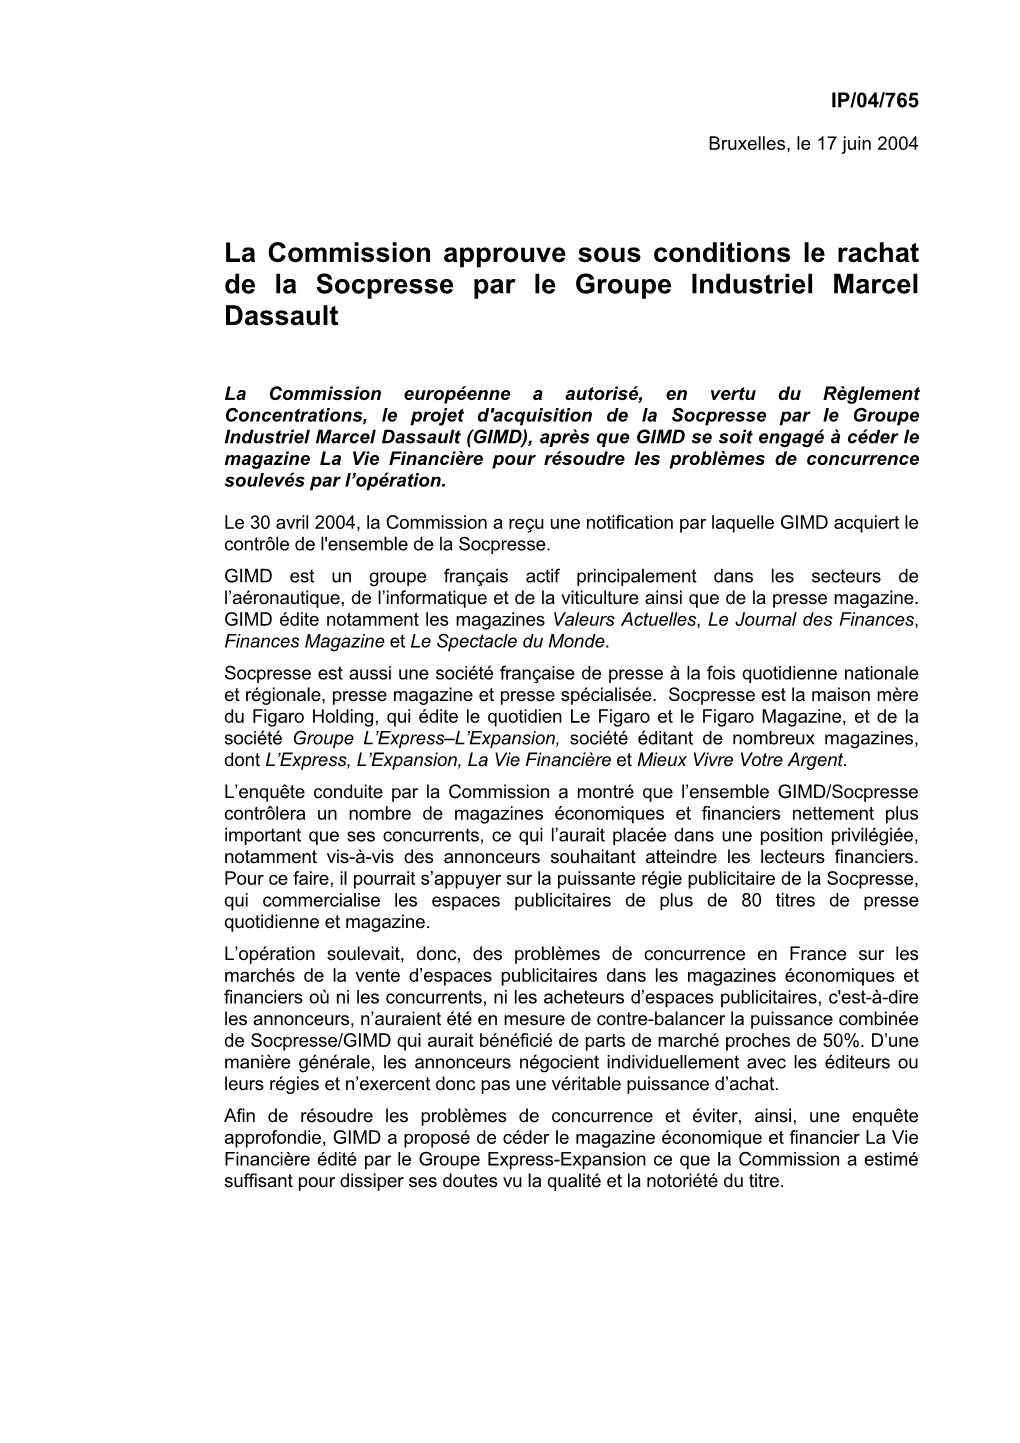 La Commission Approuve Sous Conditions Le Rachat De La Socpresse Par Le Groupe Industriel Marcel Dassault